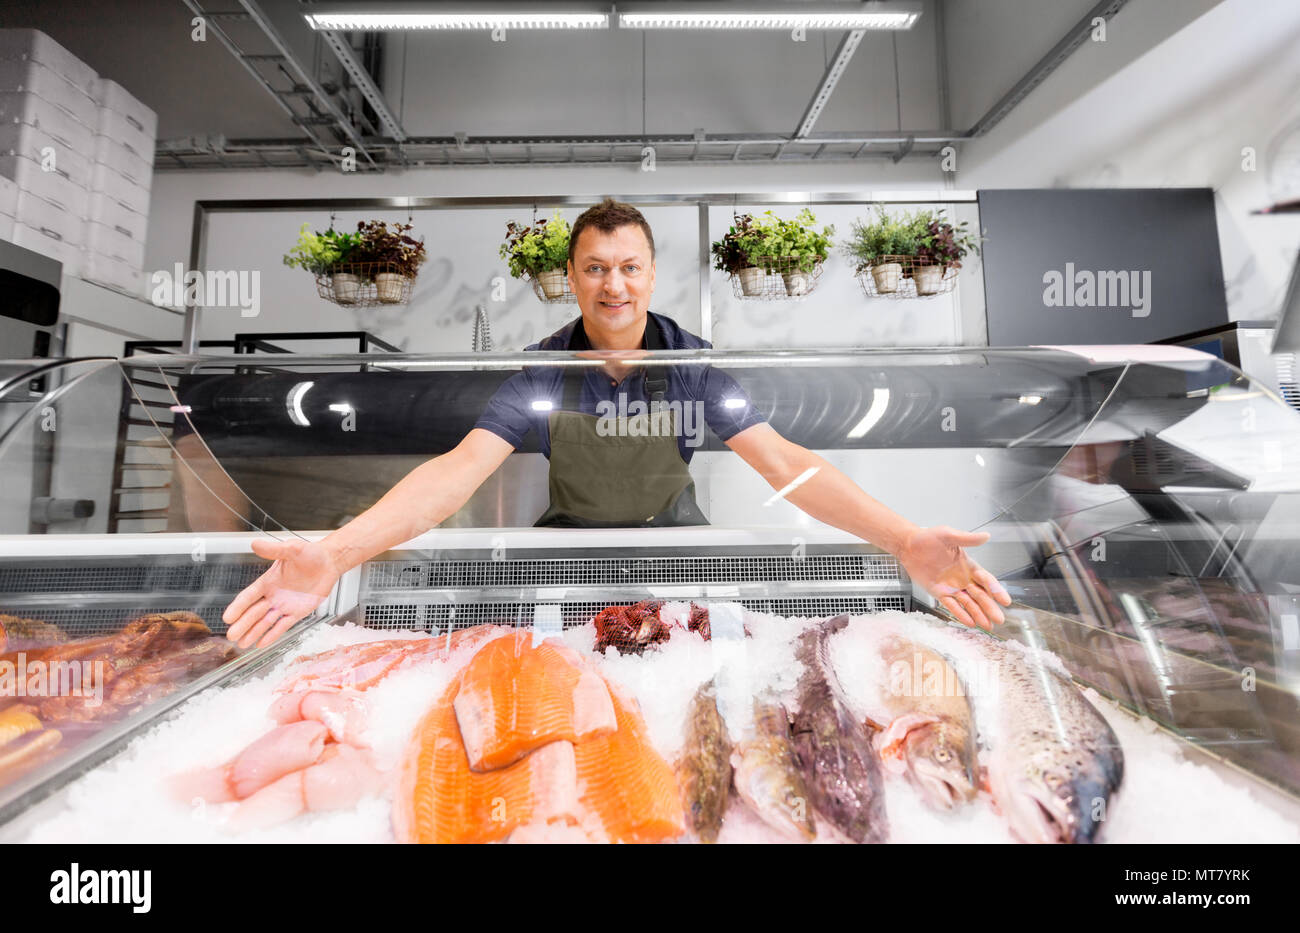 Männliche Verkäufer übersicht Meeresfrüchte Fisch shop Kühlschrank  Stockfotografie - Alamy